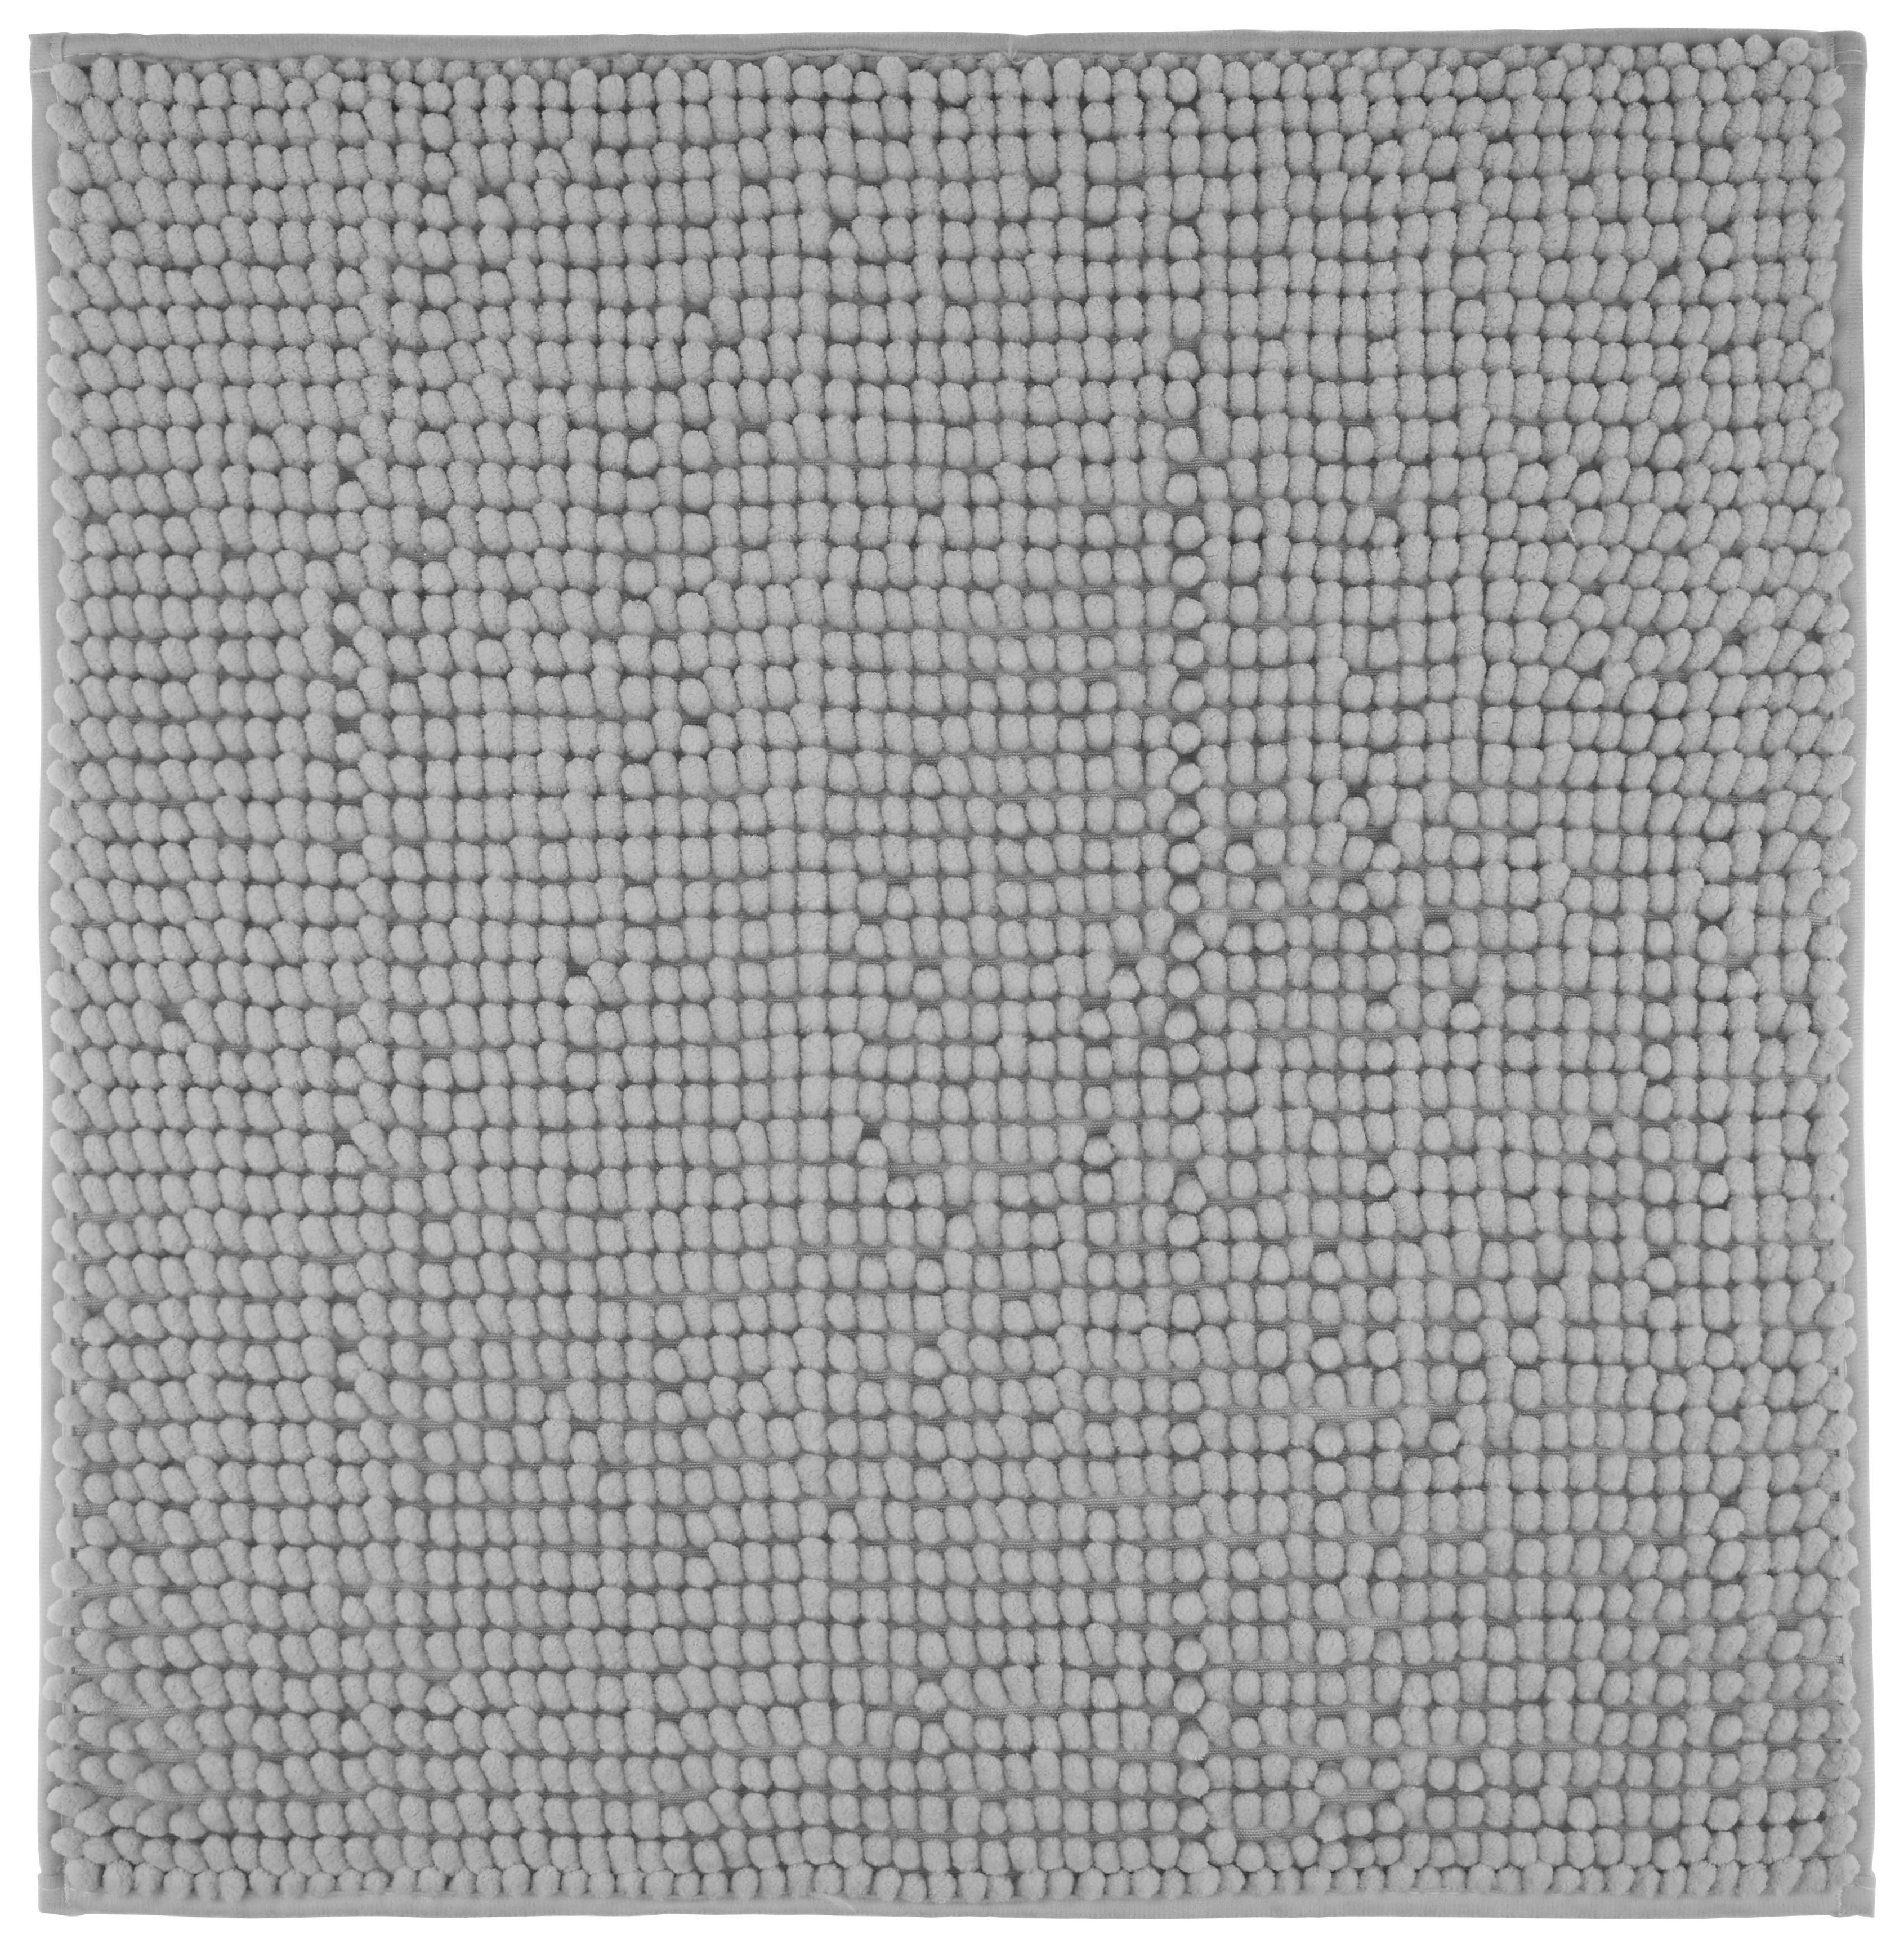 Předložka Koupelnová Nelly, 50/50cm, Stříbrná - barvy stříbra, textil (50/50cm) - Modern Living